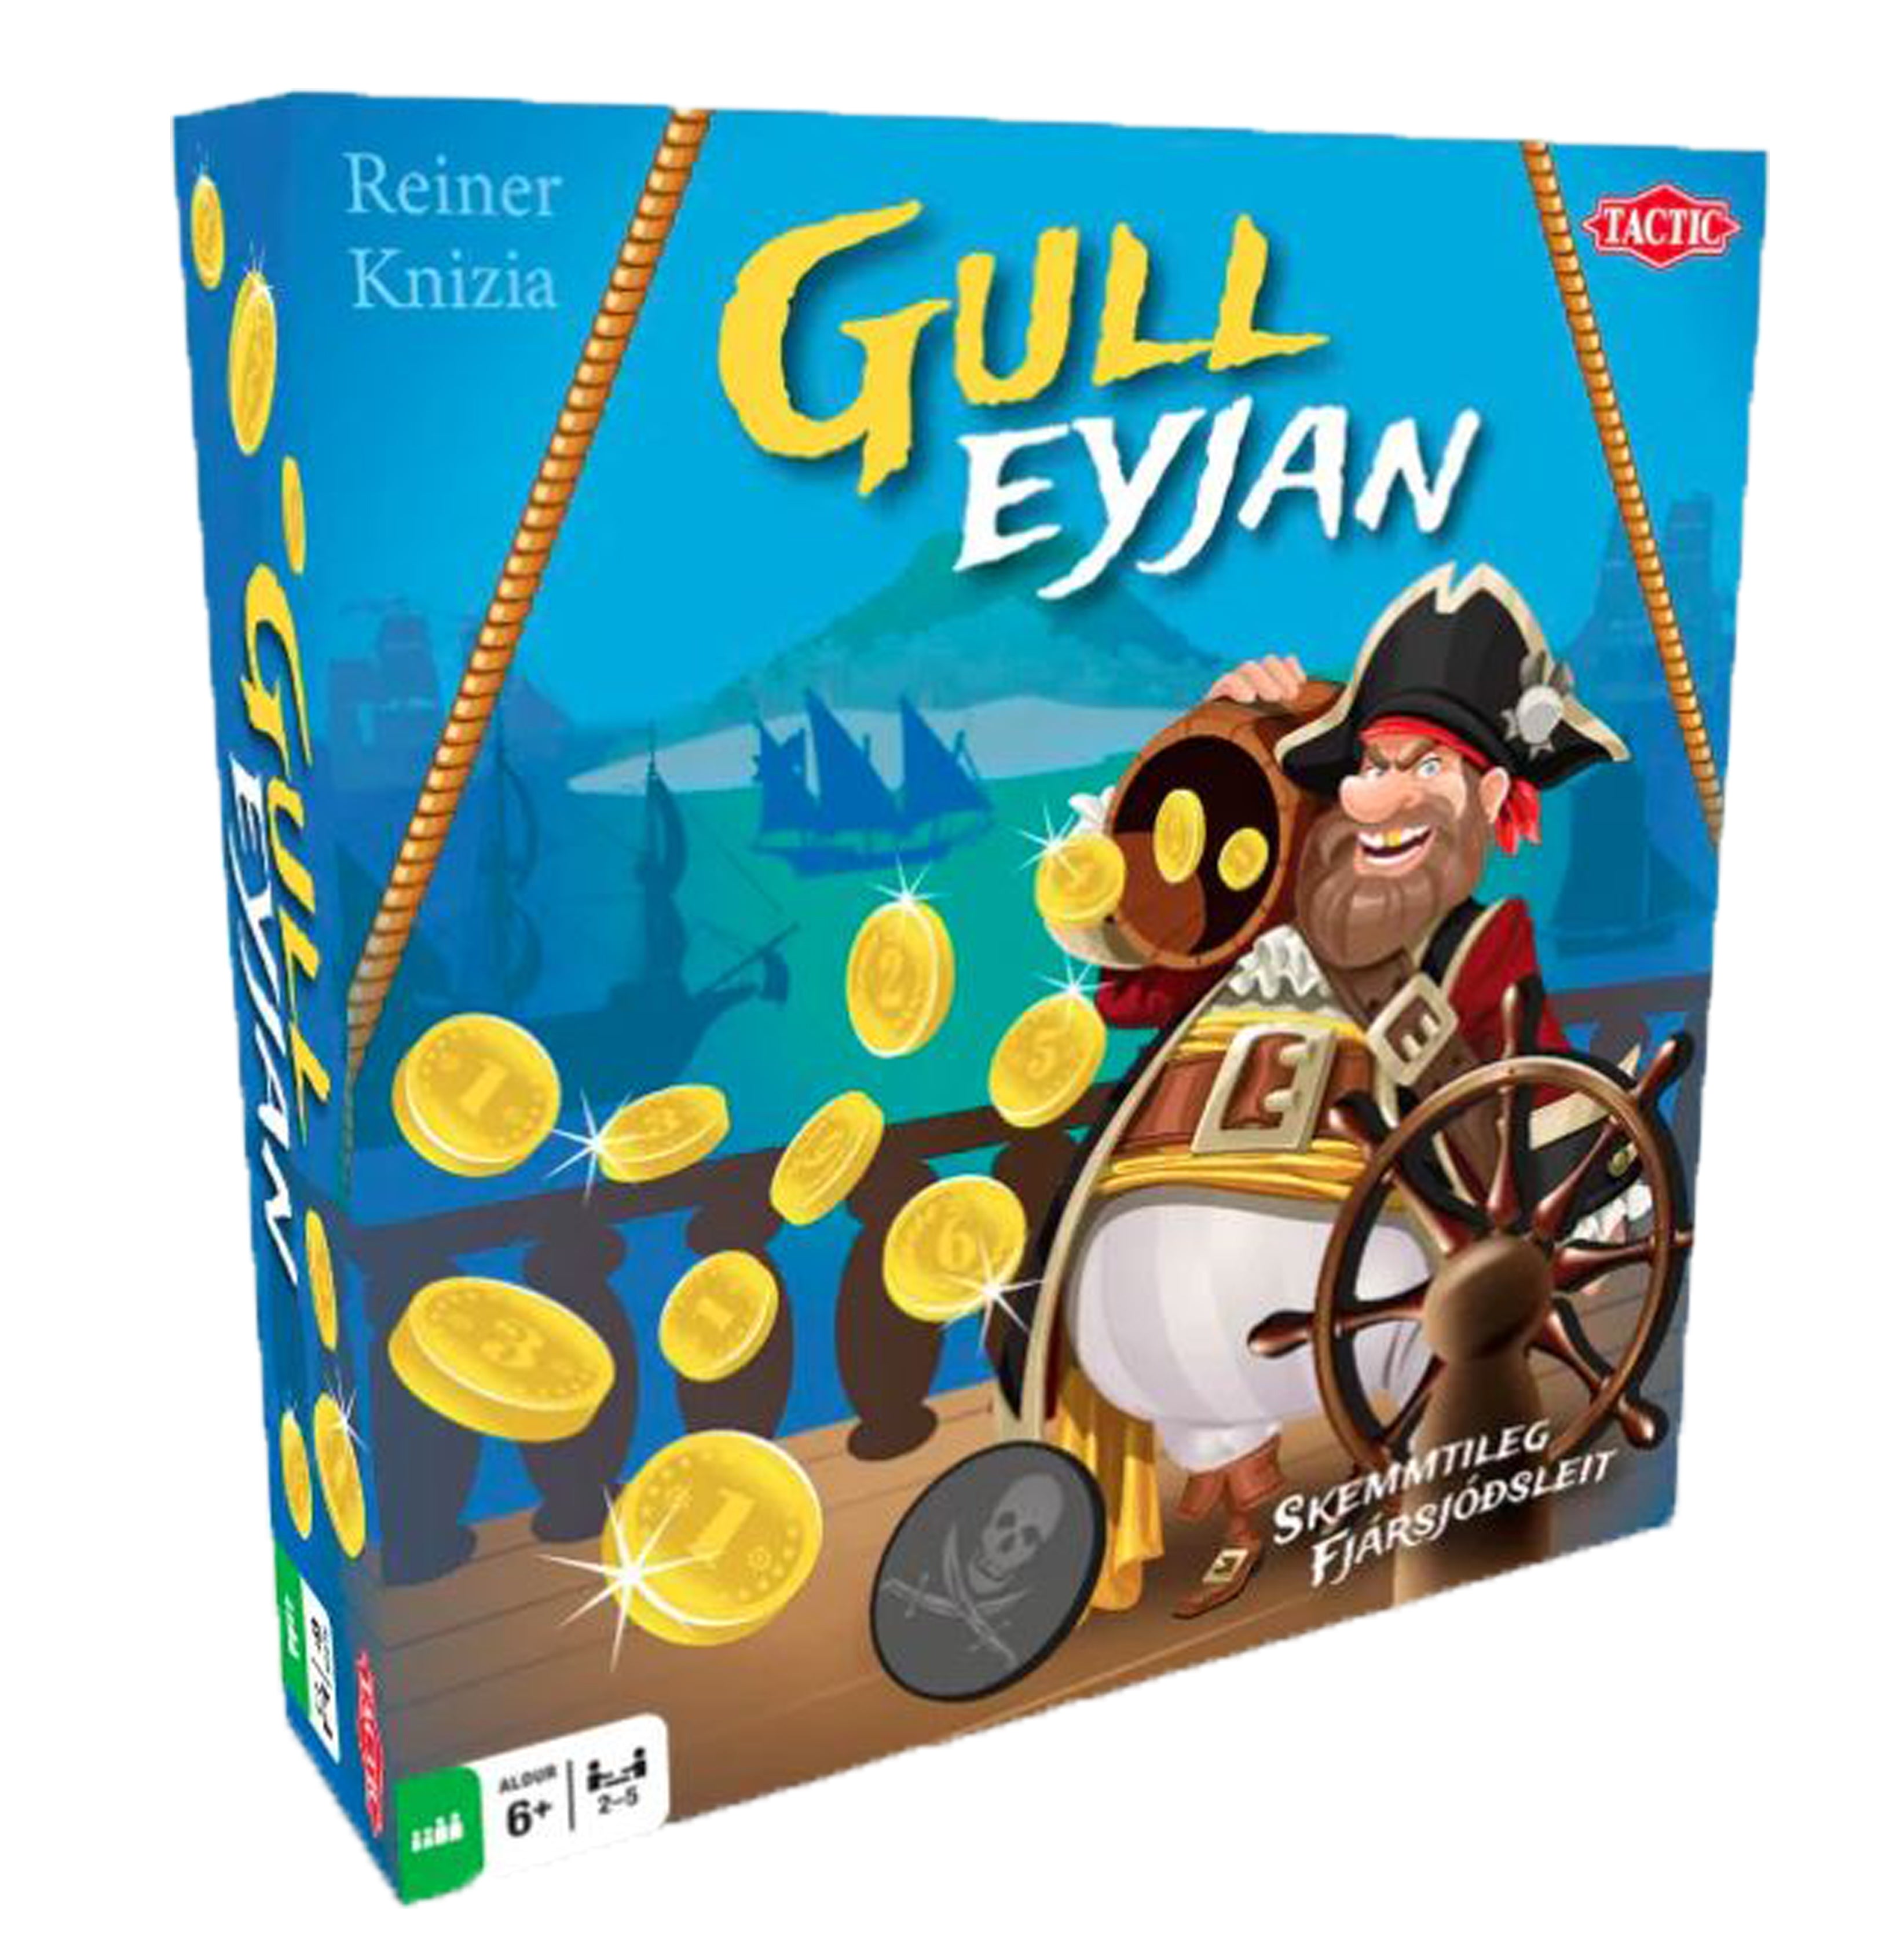 Gulleyjan - Spil